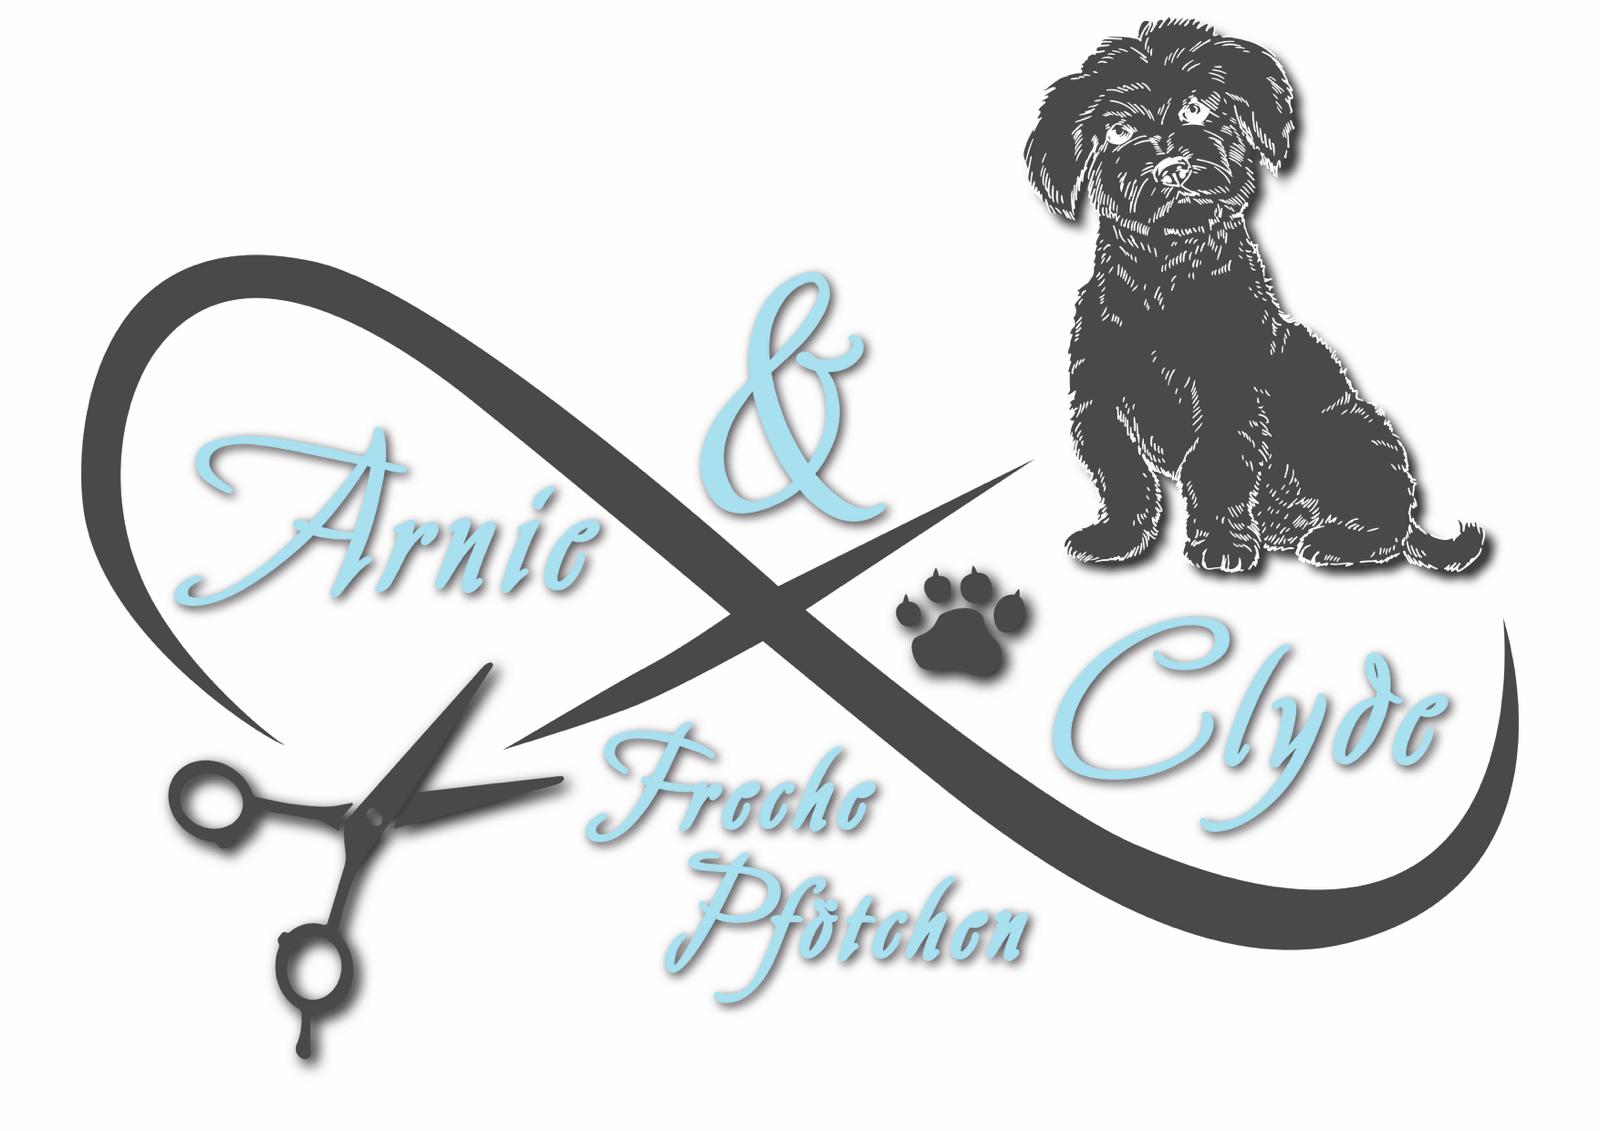 Arnie & Clyde - freche Pfötchen Logo